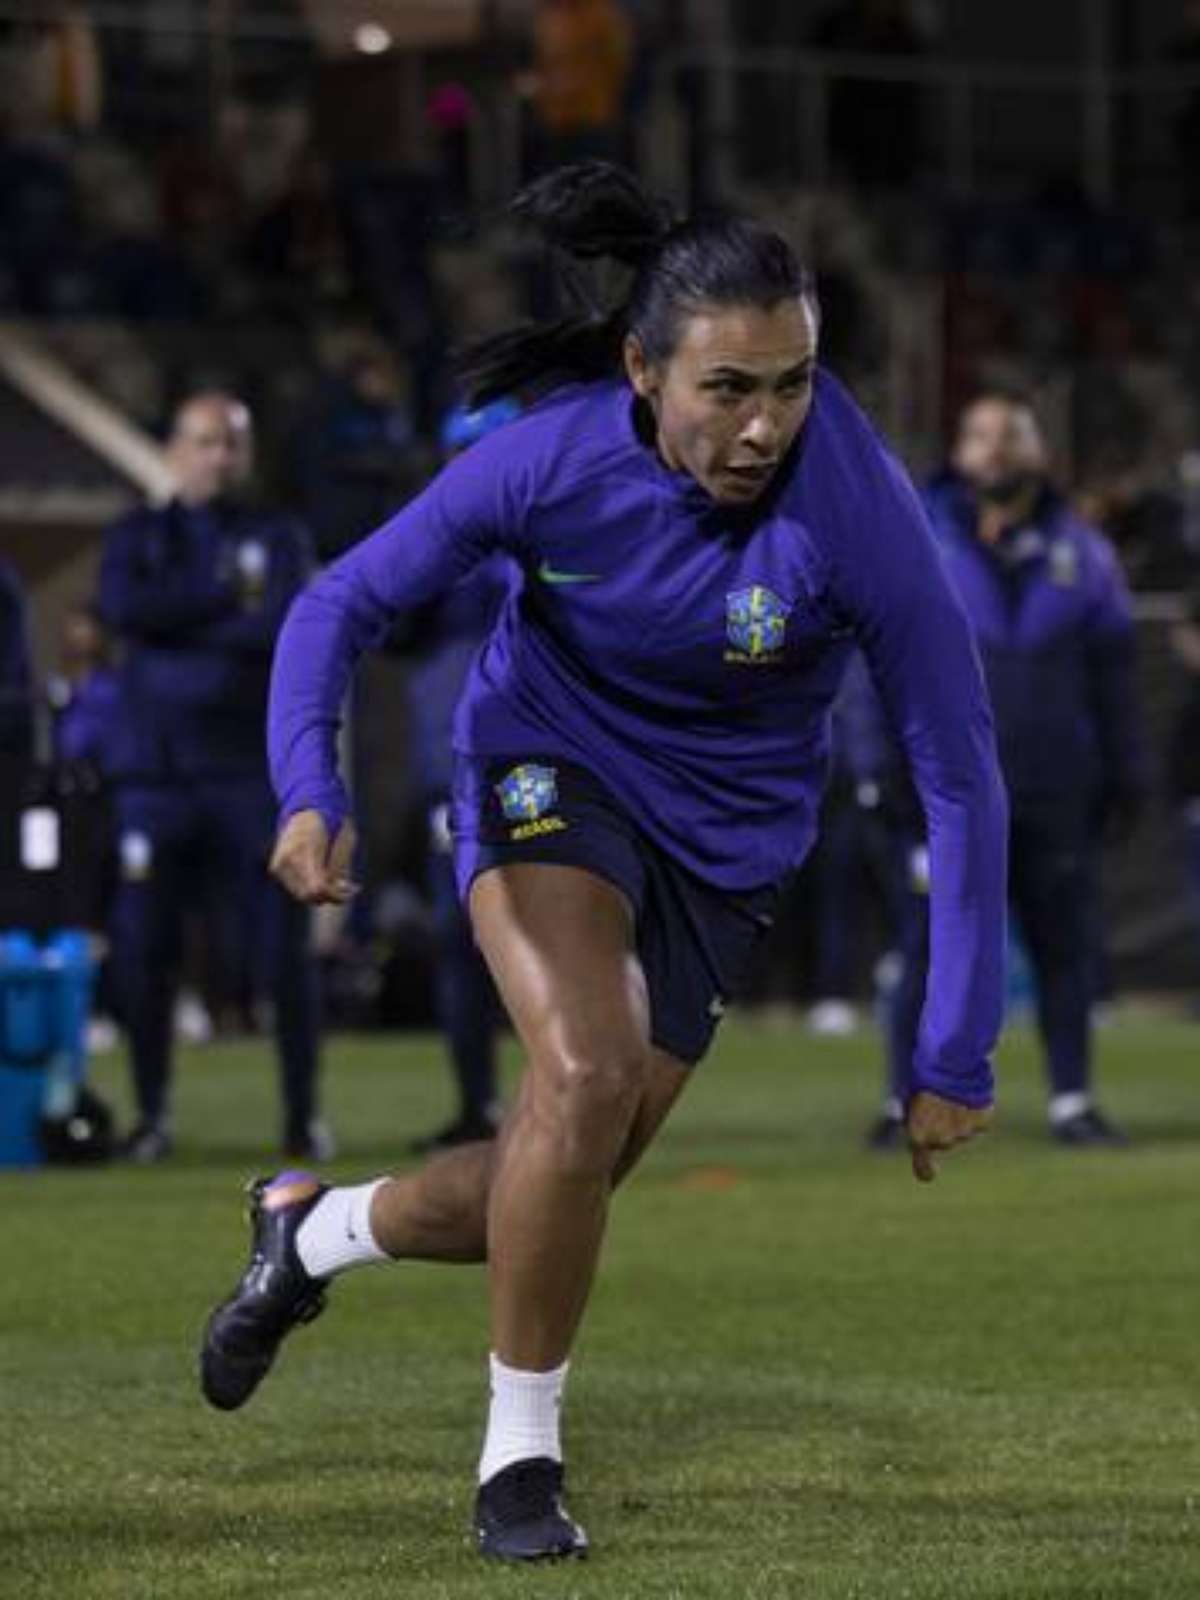 Marta vai jogar a Copa do Mundo 2023 de futebol feminino?